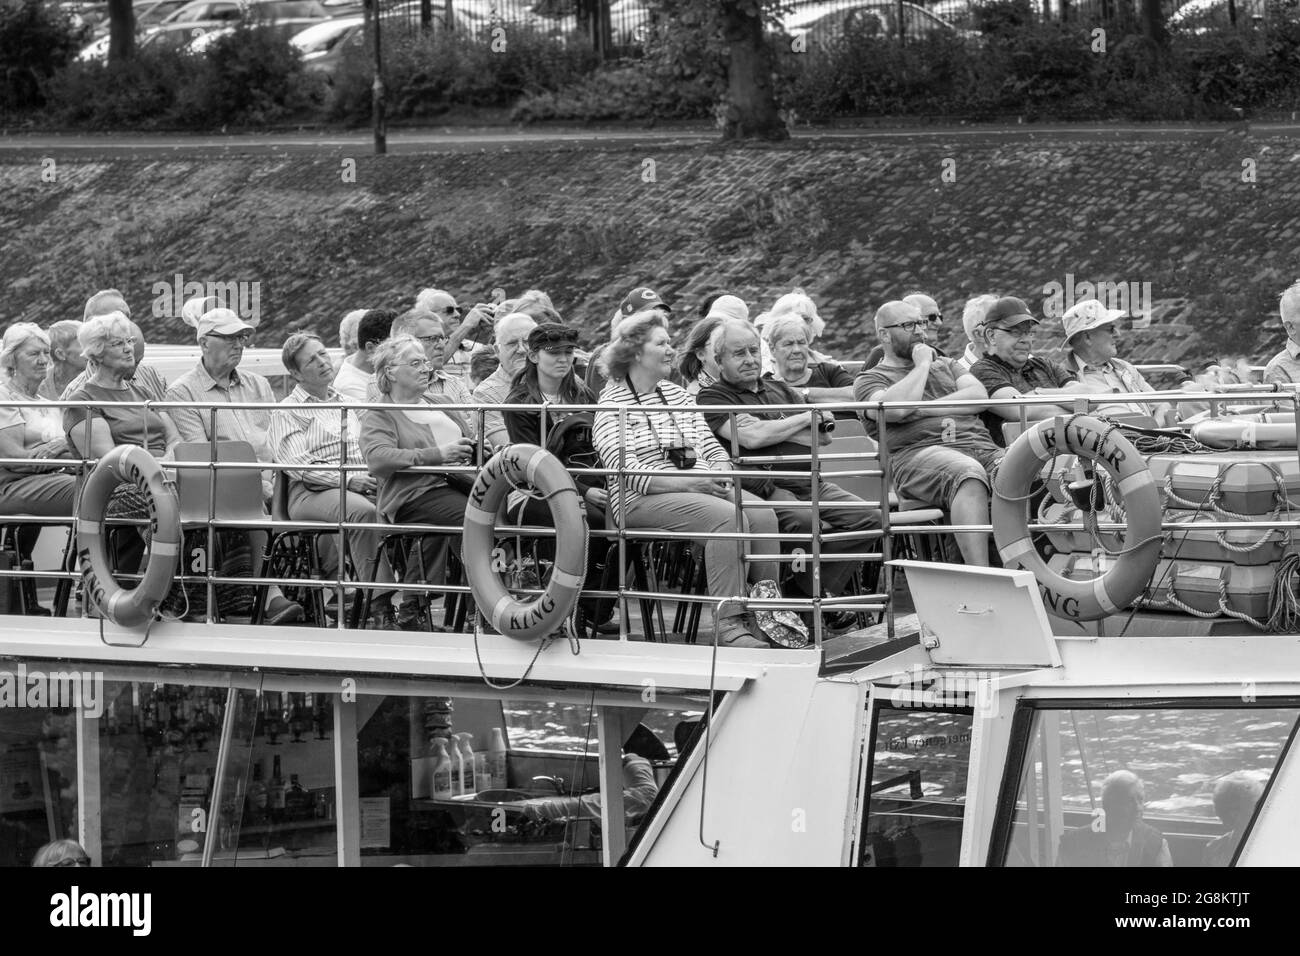 Touristen saßen auf dem Oberdeck eines Kreuzschiffs und nutzten die Gelegenheit für eine Tour entlang des Flusses Ouse, York, North Yorkshire, England, Großbritannien. Stockfoto